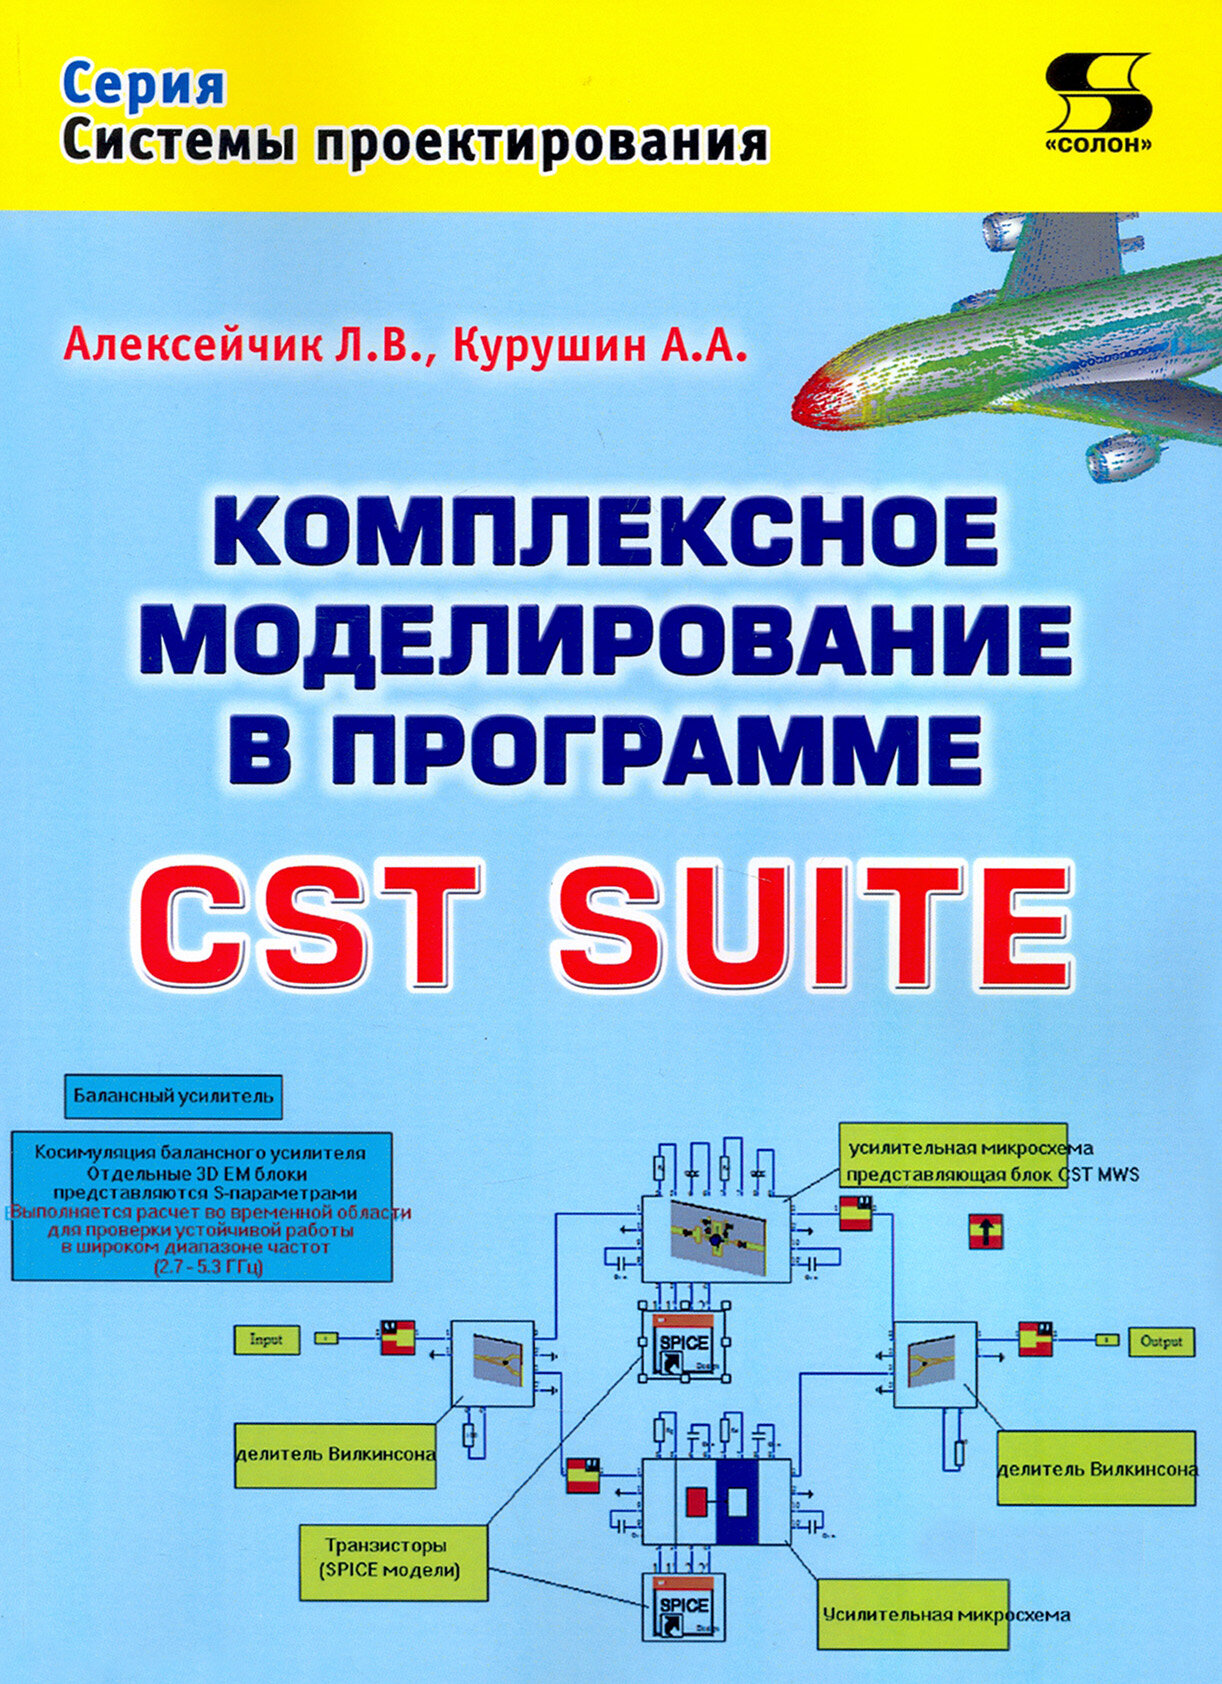 Комплексное моделирование в программе CST SUITE - фото №2